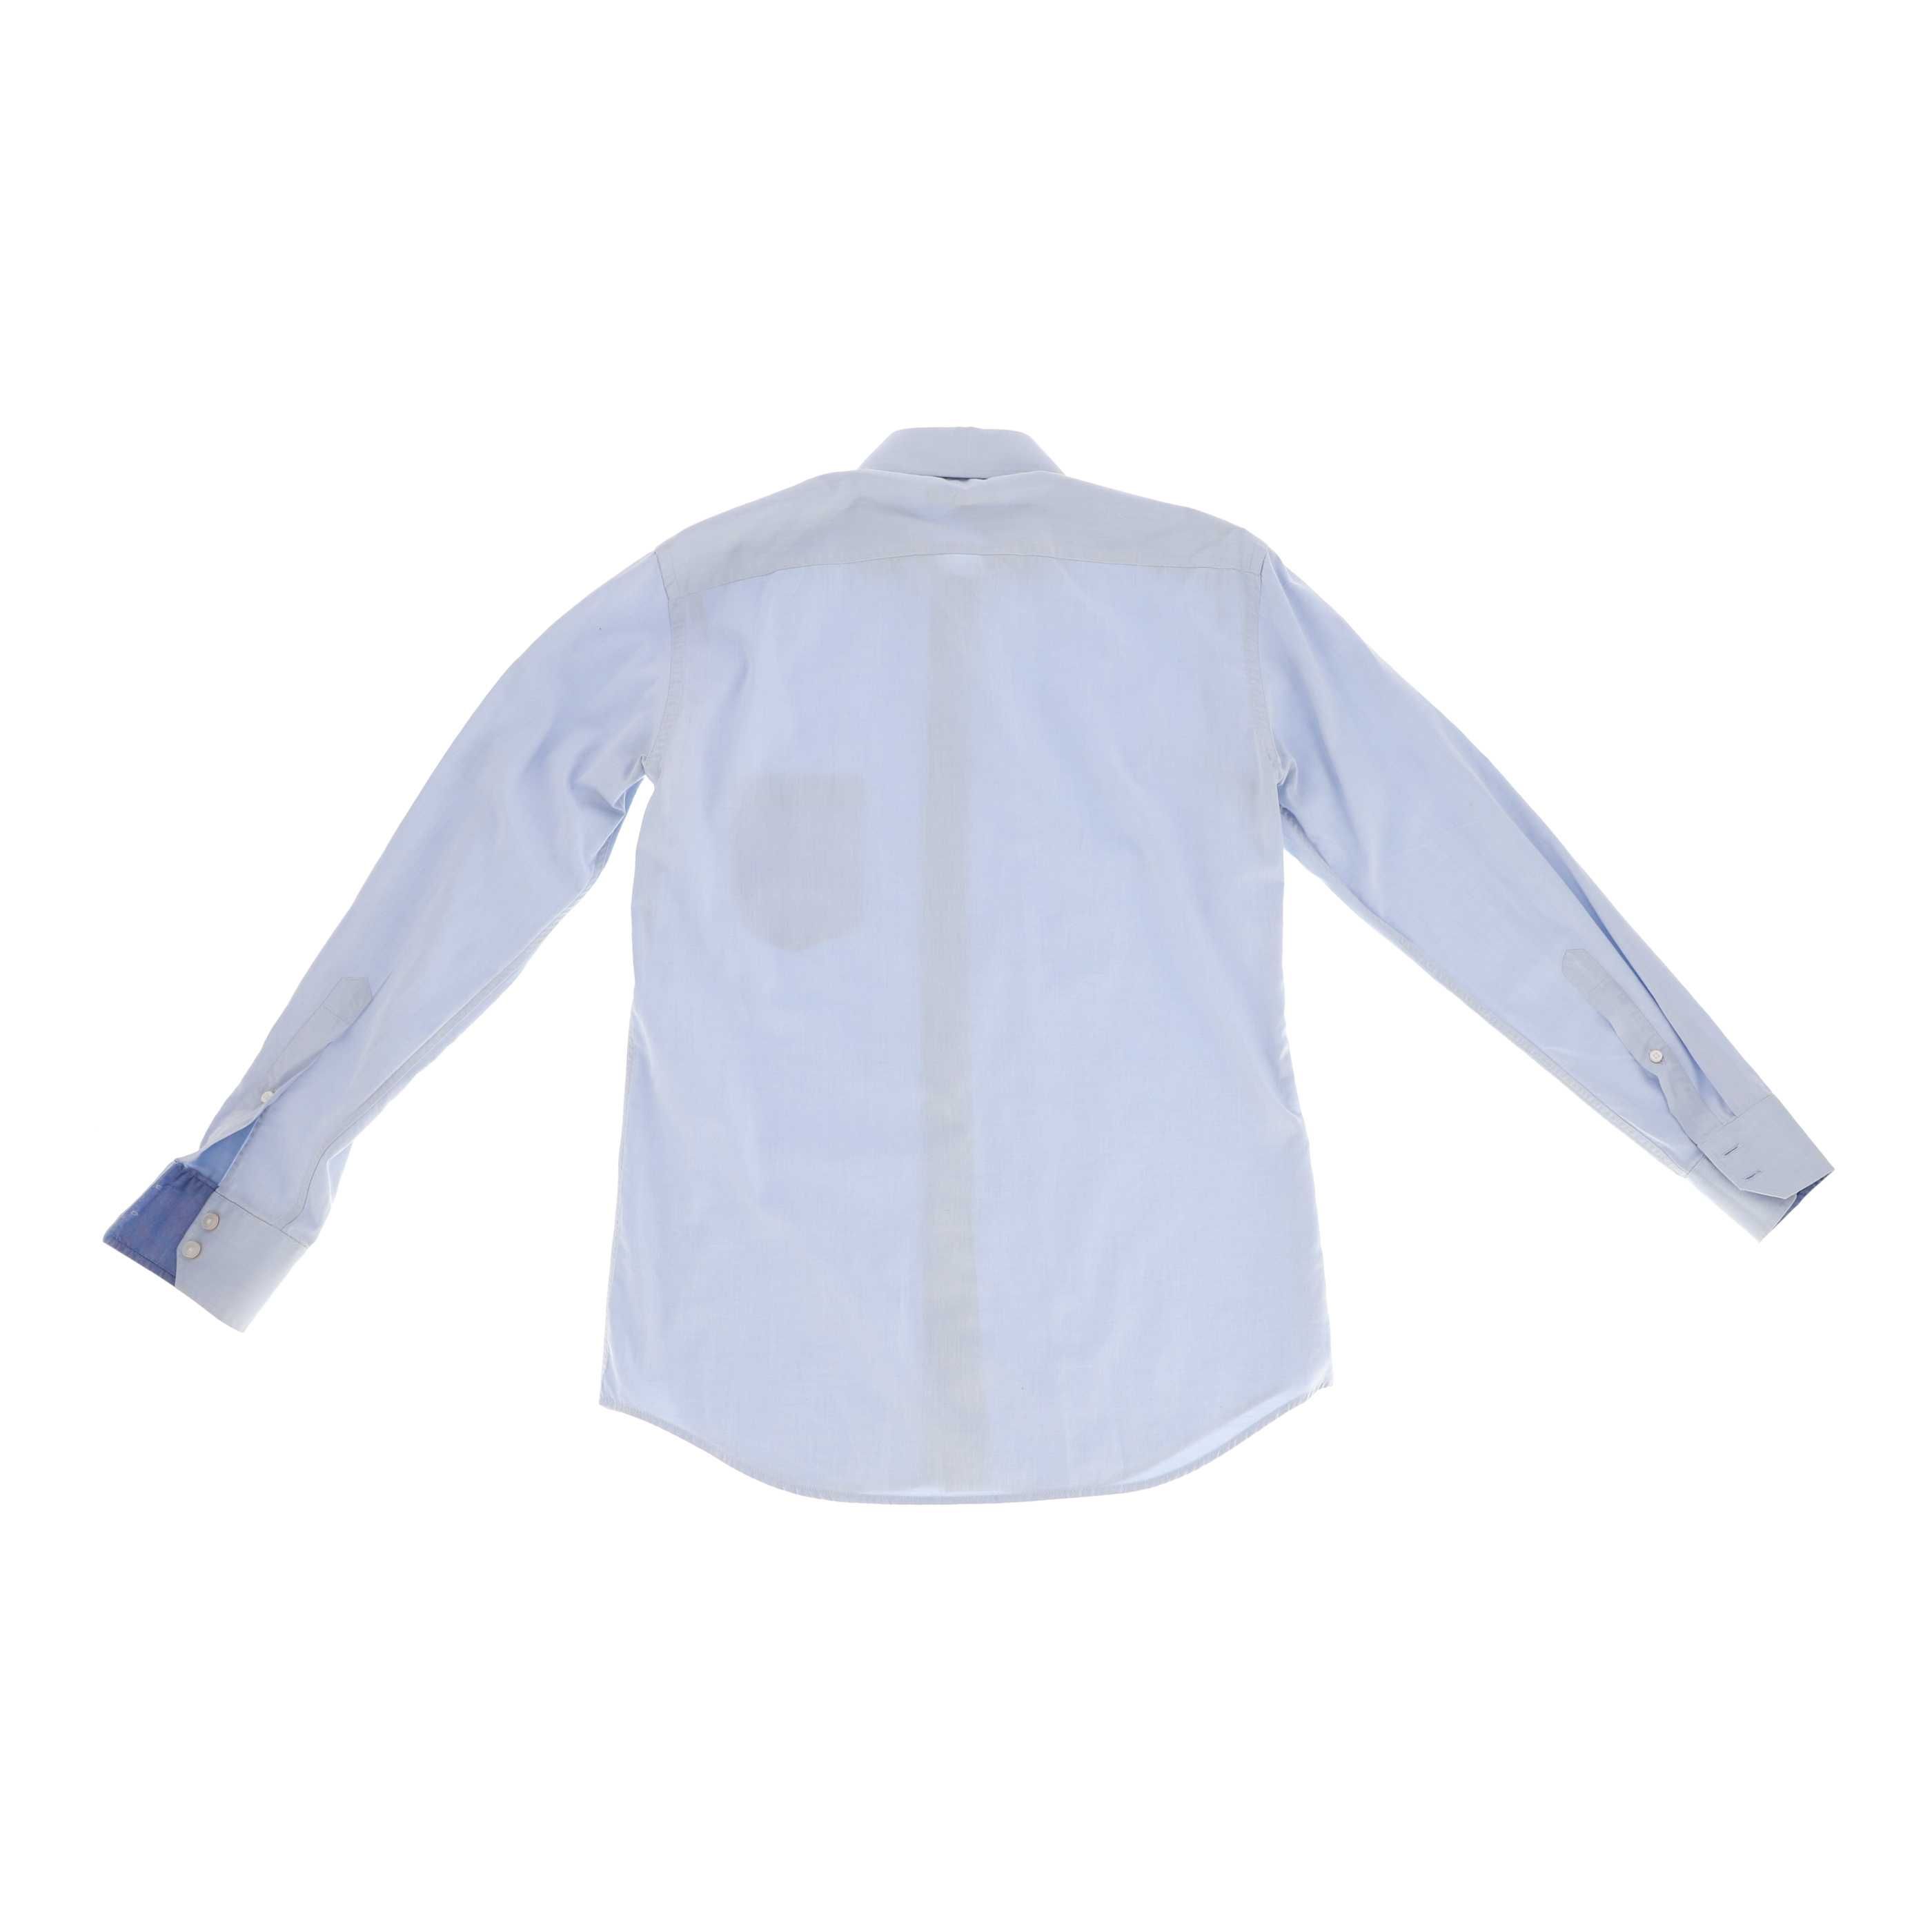 Błękitna koszula marki Vistula, rozmiar 40